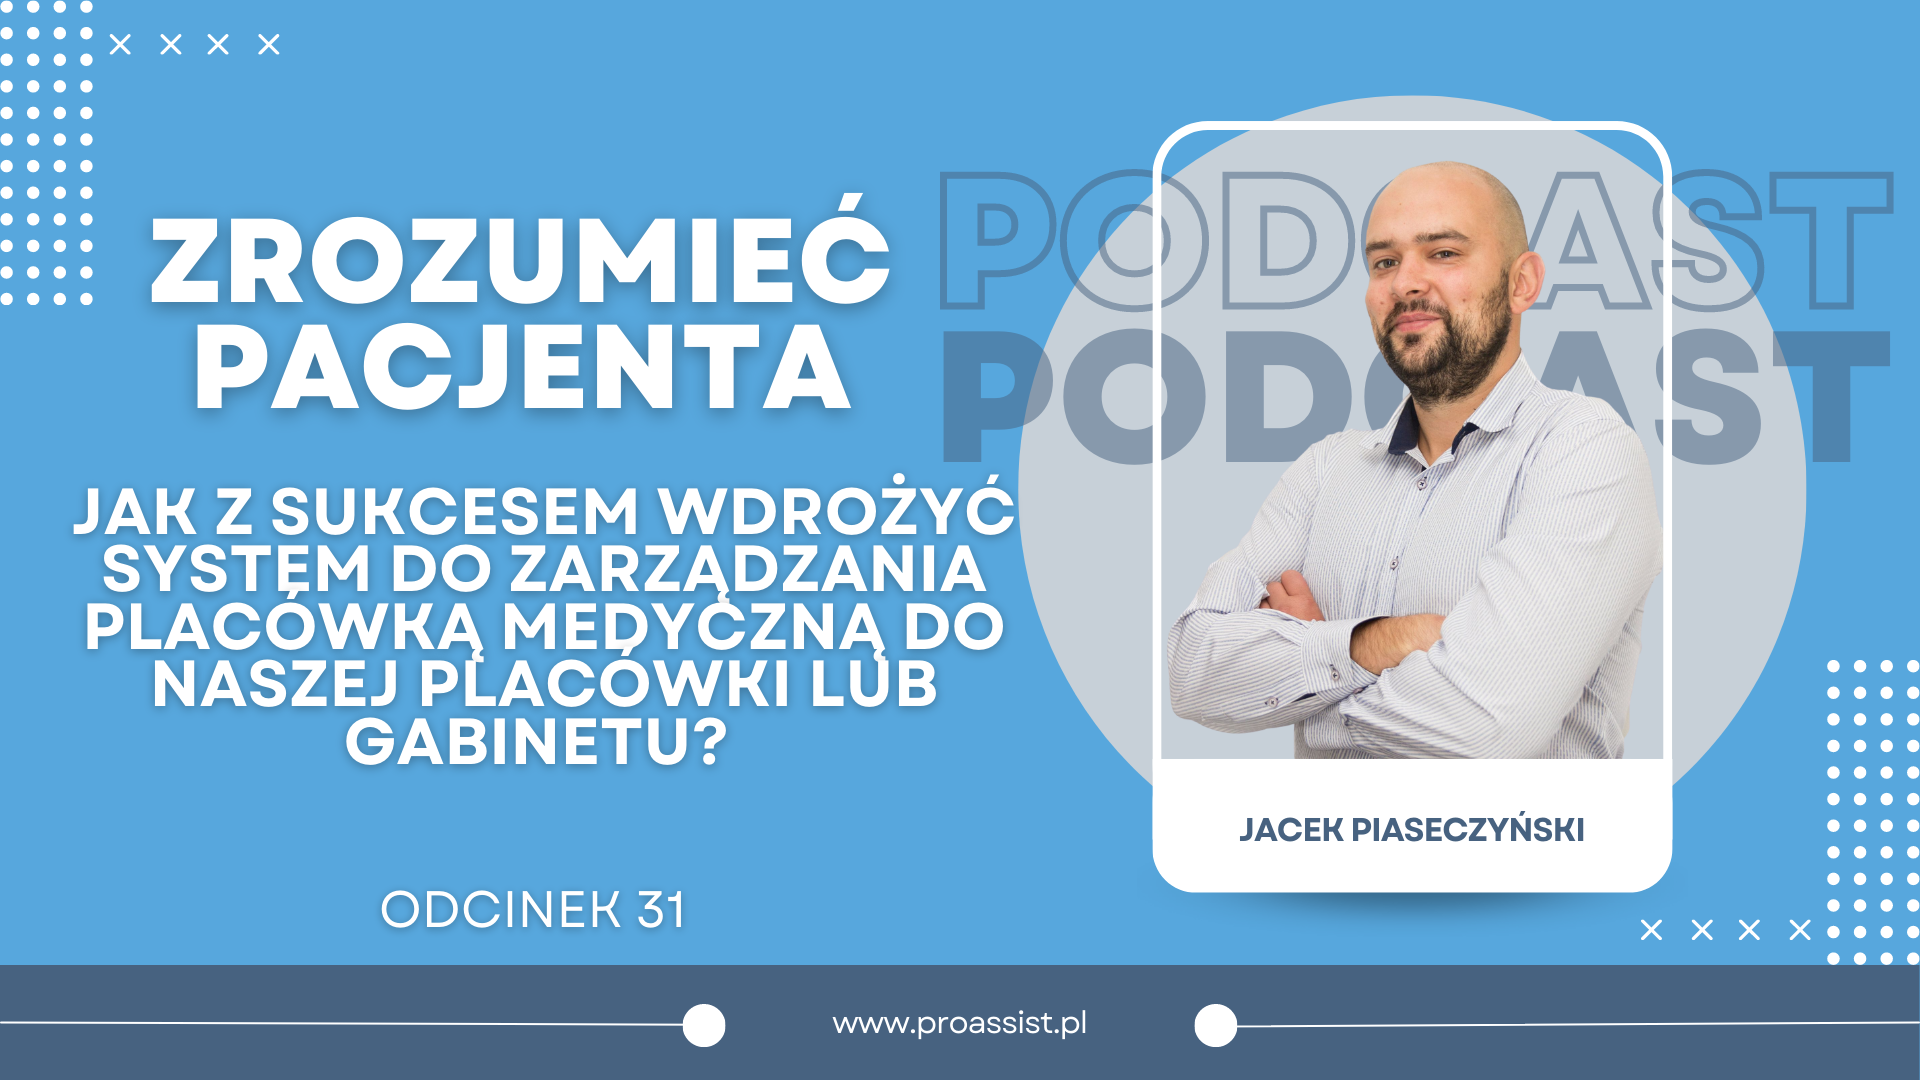 Okładka do podcastu Jacka Piaseczyńskiego zrozumieć pacjenta jak z sukcesem wdrożyć system do zarządzania placówką medyczną do naszej placówki lub gabinetu